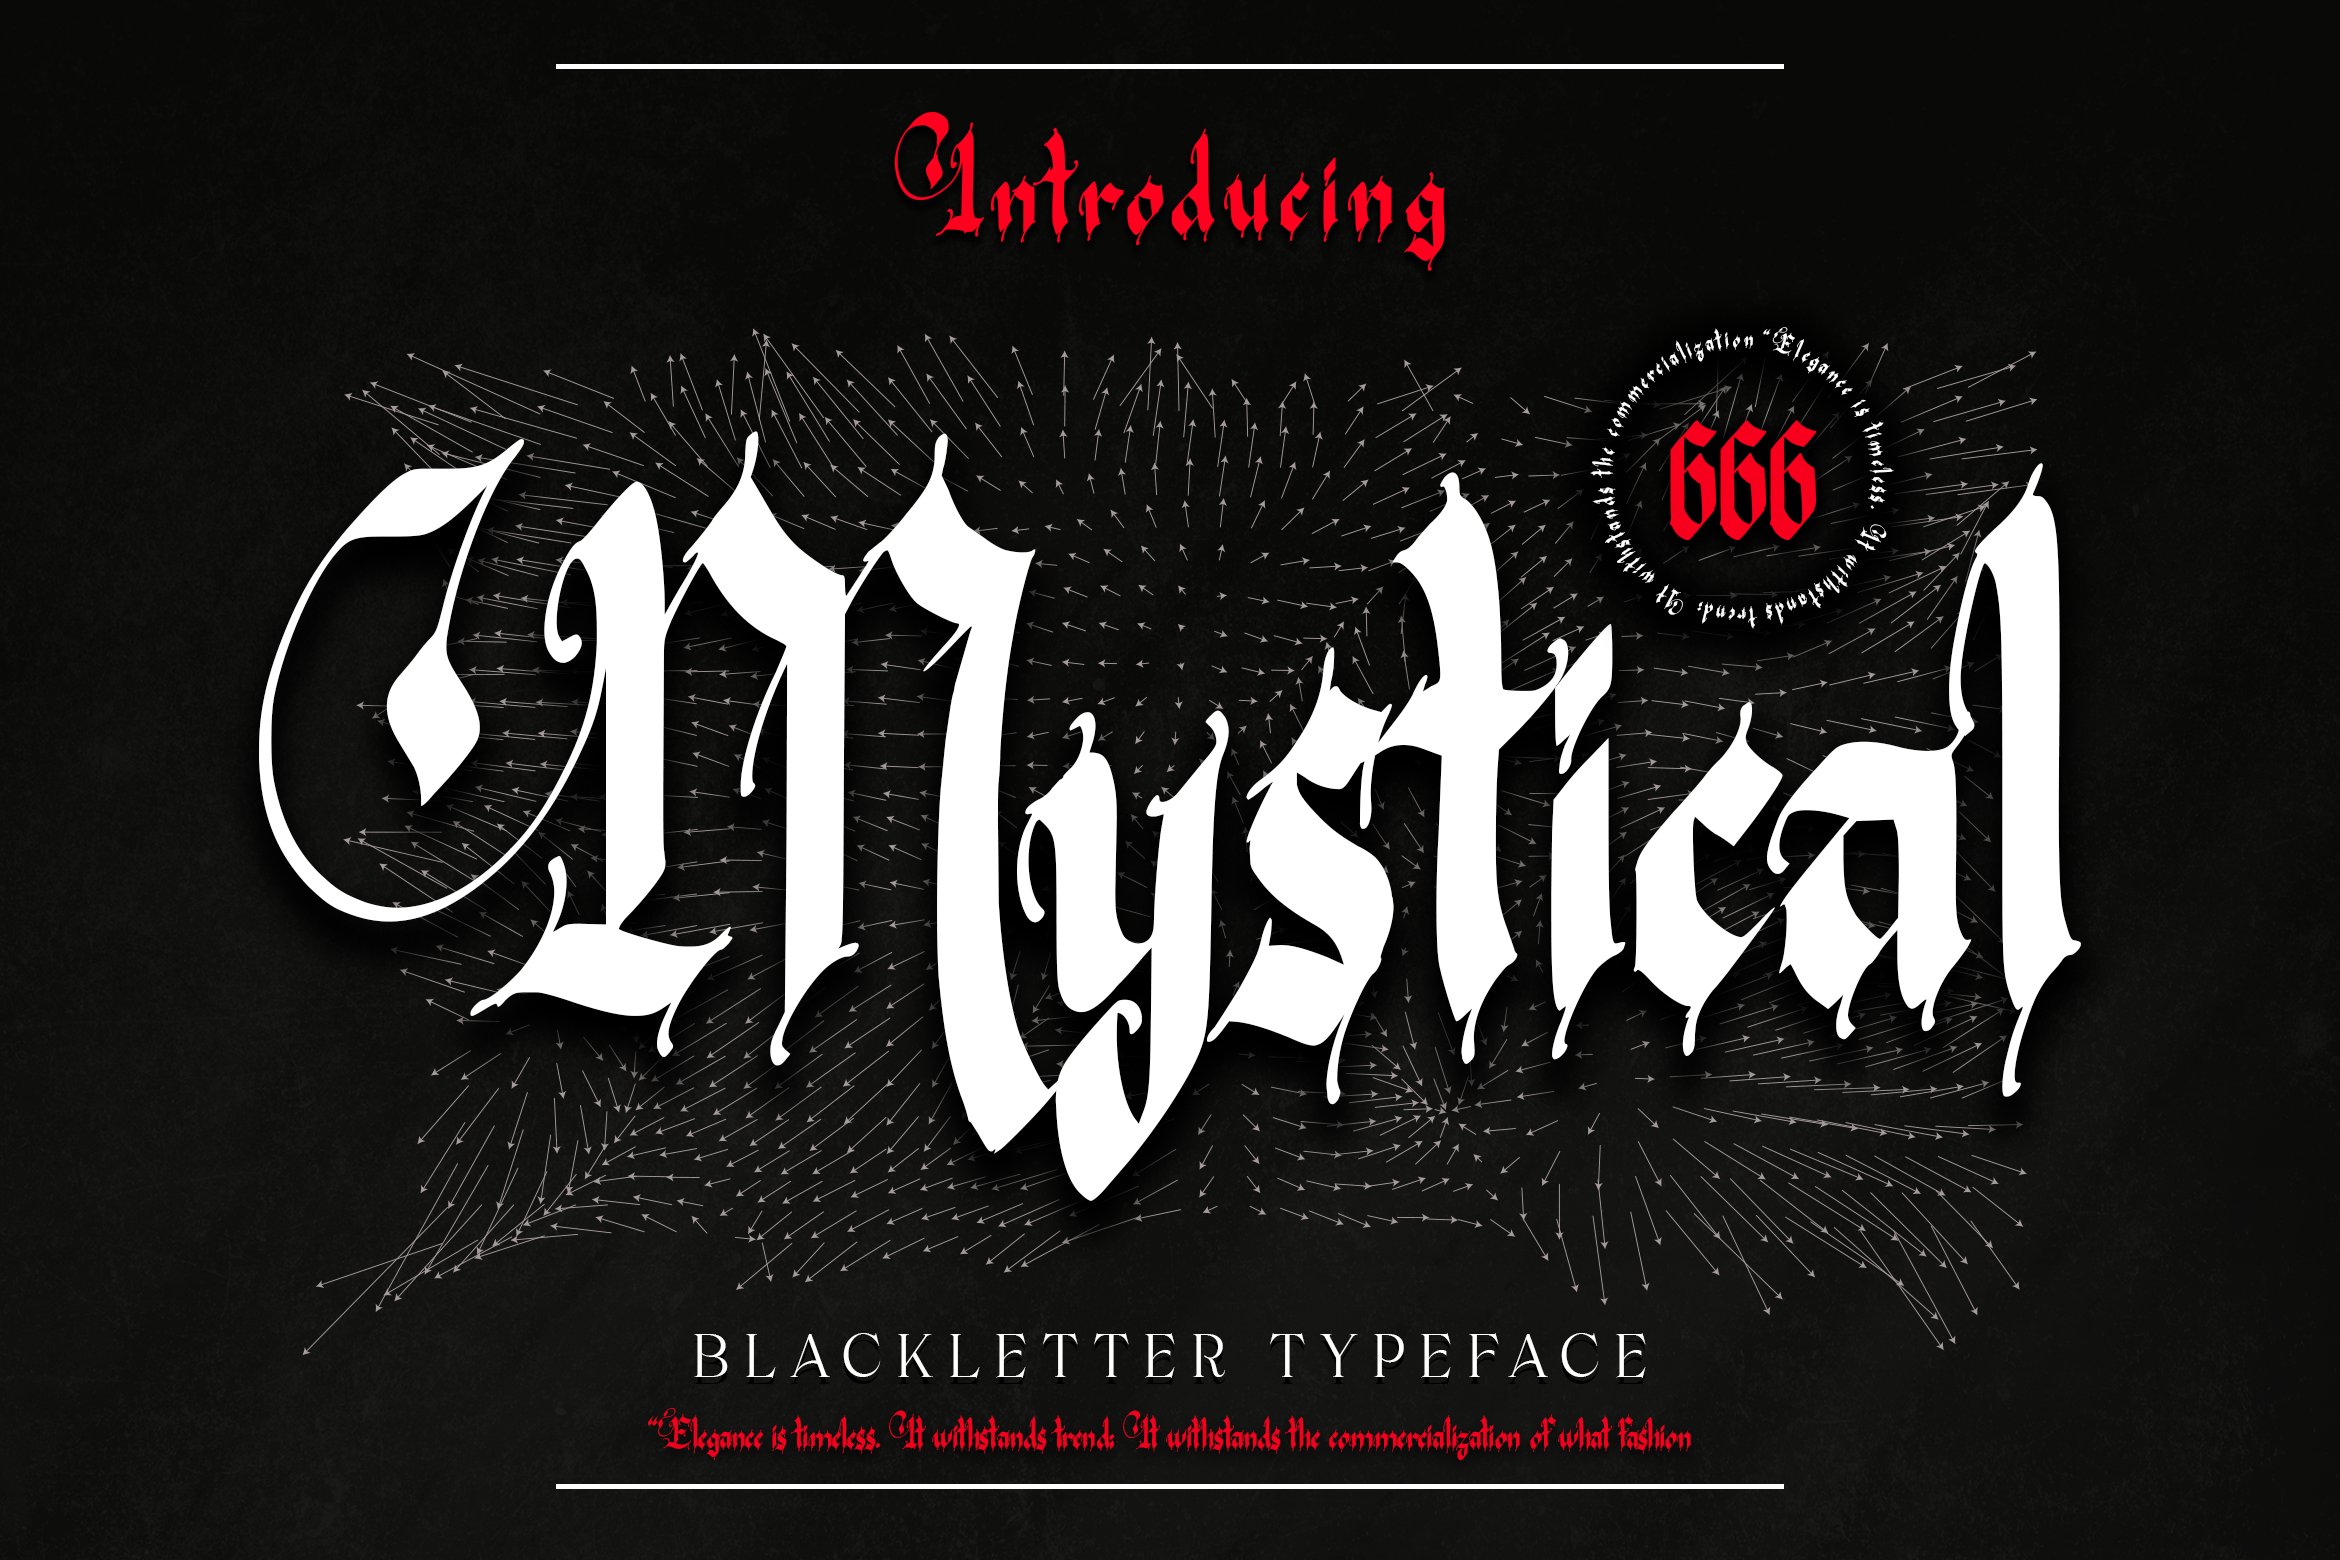 Mystical - Blackletter cover image.